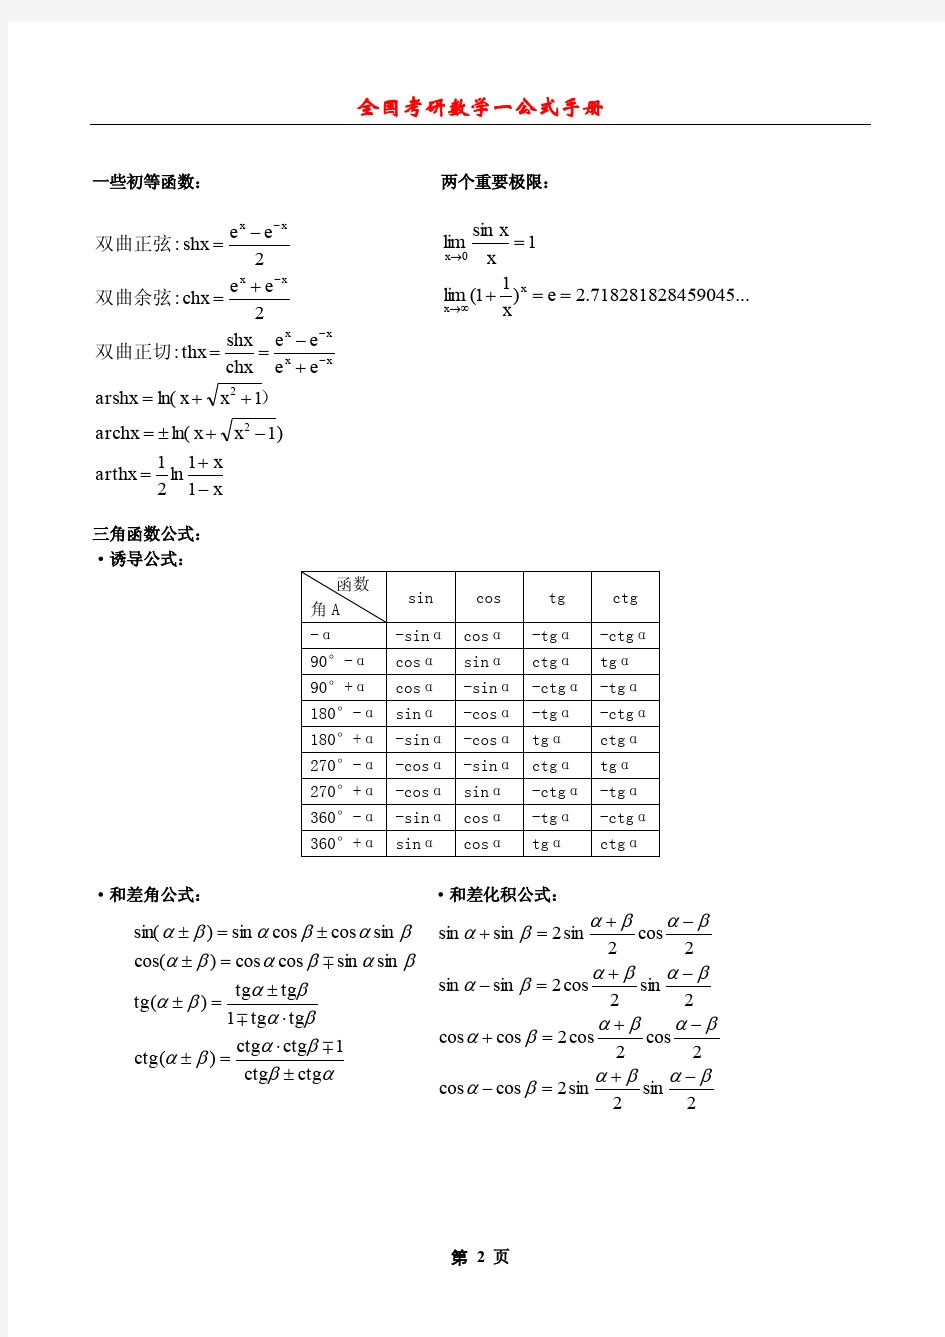 考研数学一公式手册大全(整理全面)